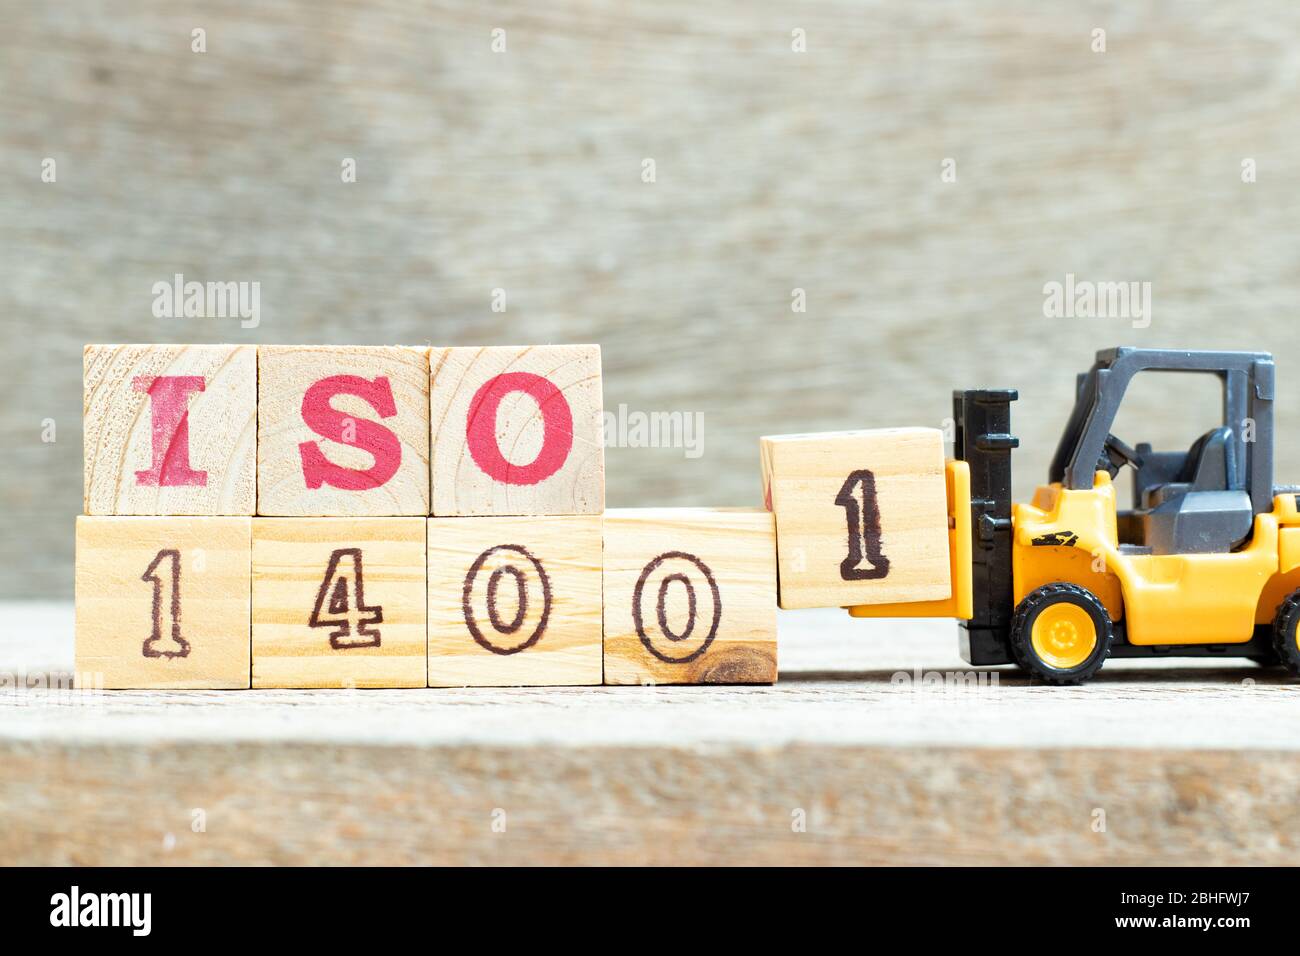 Spielzeug Gabelstapler halten Buchstabenblock 1 Wort ISO 14001 auf Holz Hintergrund zu vervollständigen Stockfoto